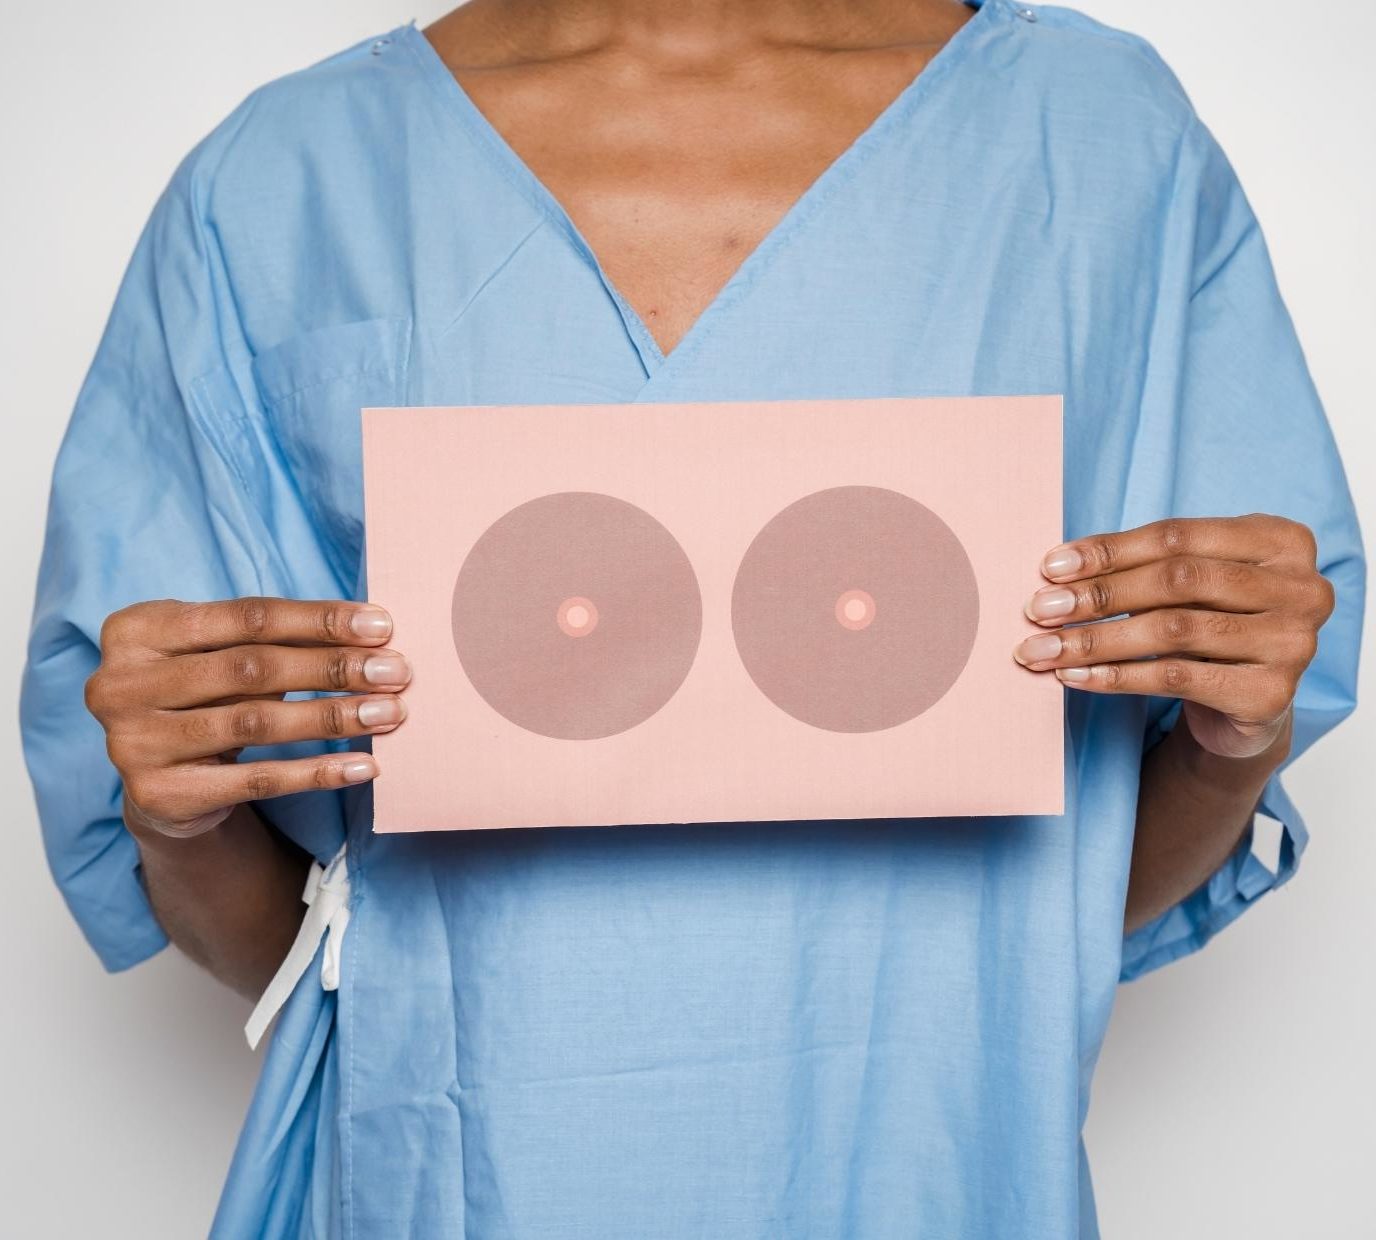 anticoncepcionais cancer de mama outubro rosa